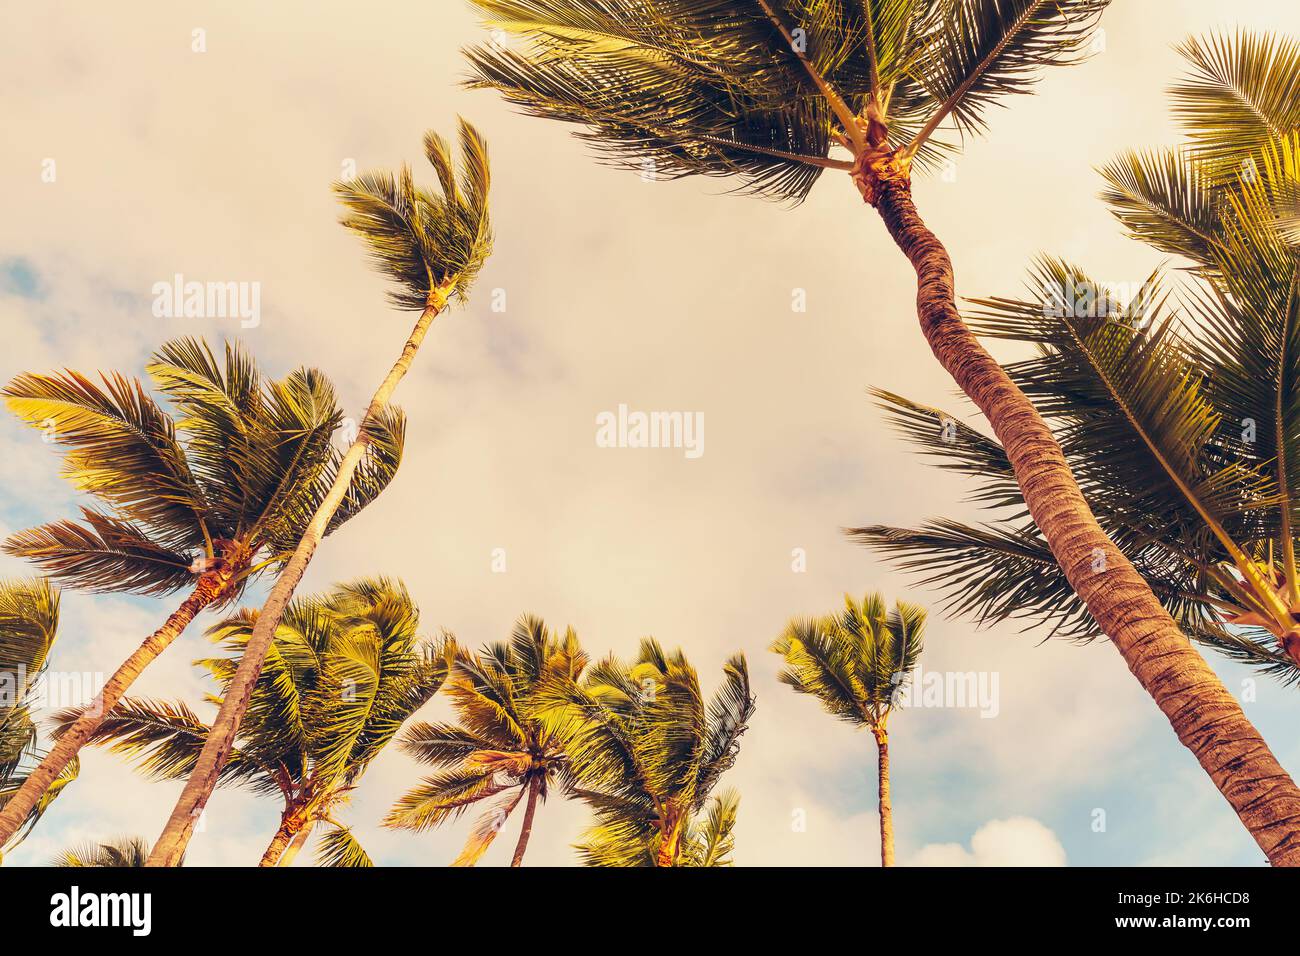 Kokospalmen im Wind stehen tagsüber unter bewölktem Himmel. Stilisiertes Vintage-Foto mit Filtereffekt für Tonwertkorrektur Stockfoto